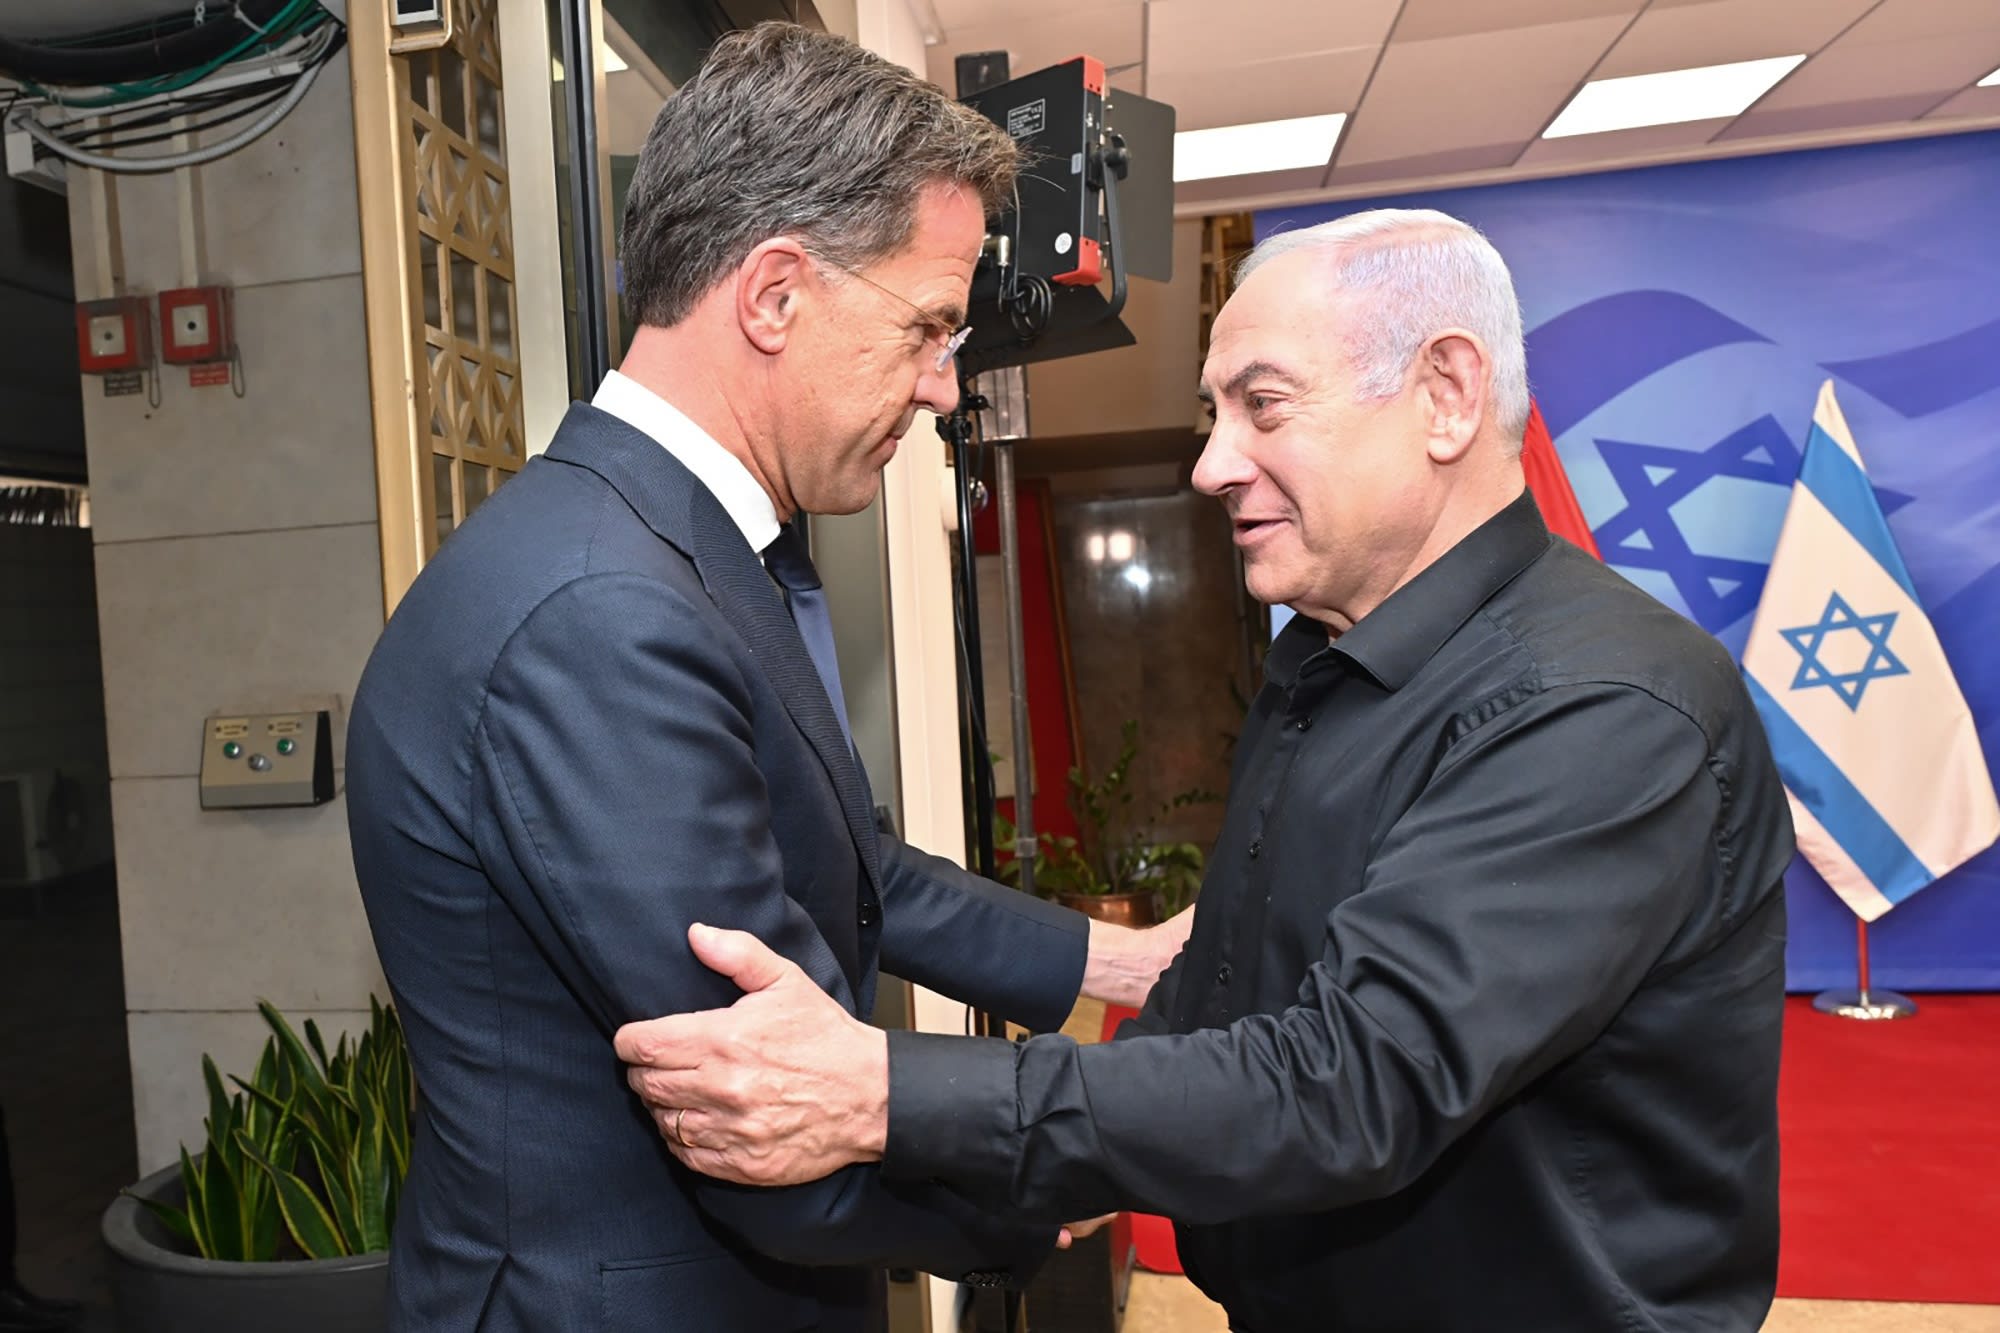 Rutte in 'stevig' gesprek met Israëlische premier: 'Realiseer je macht'